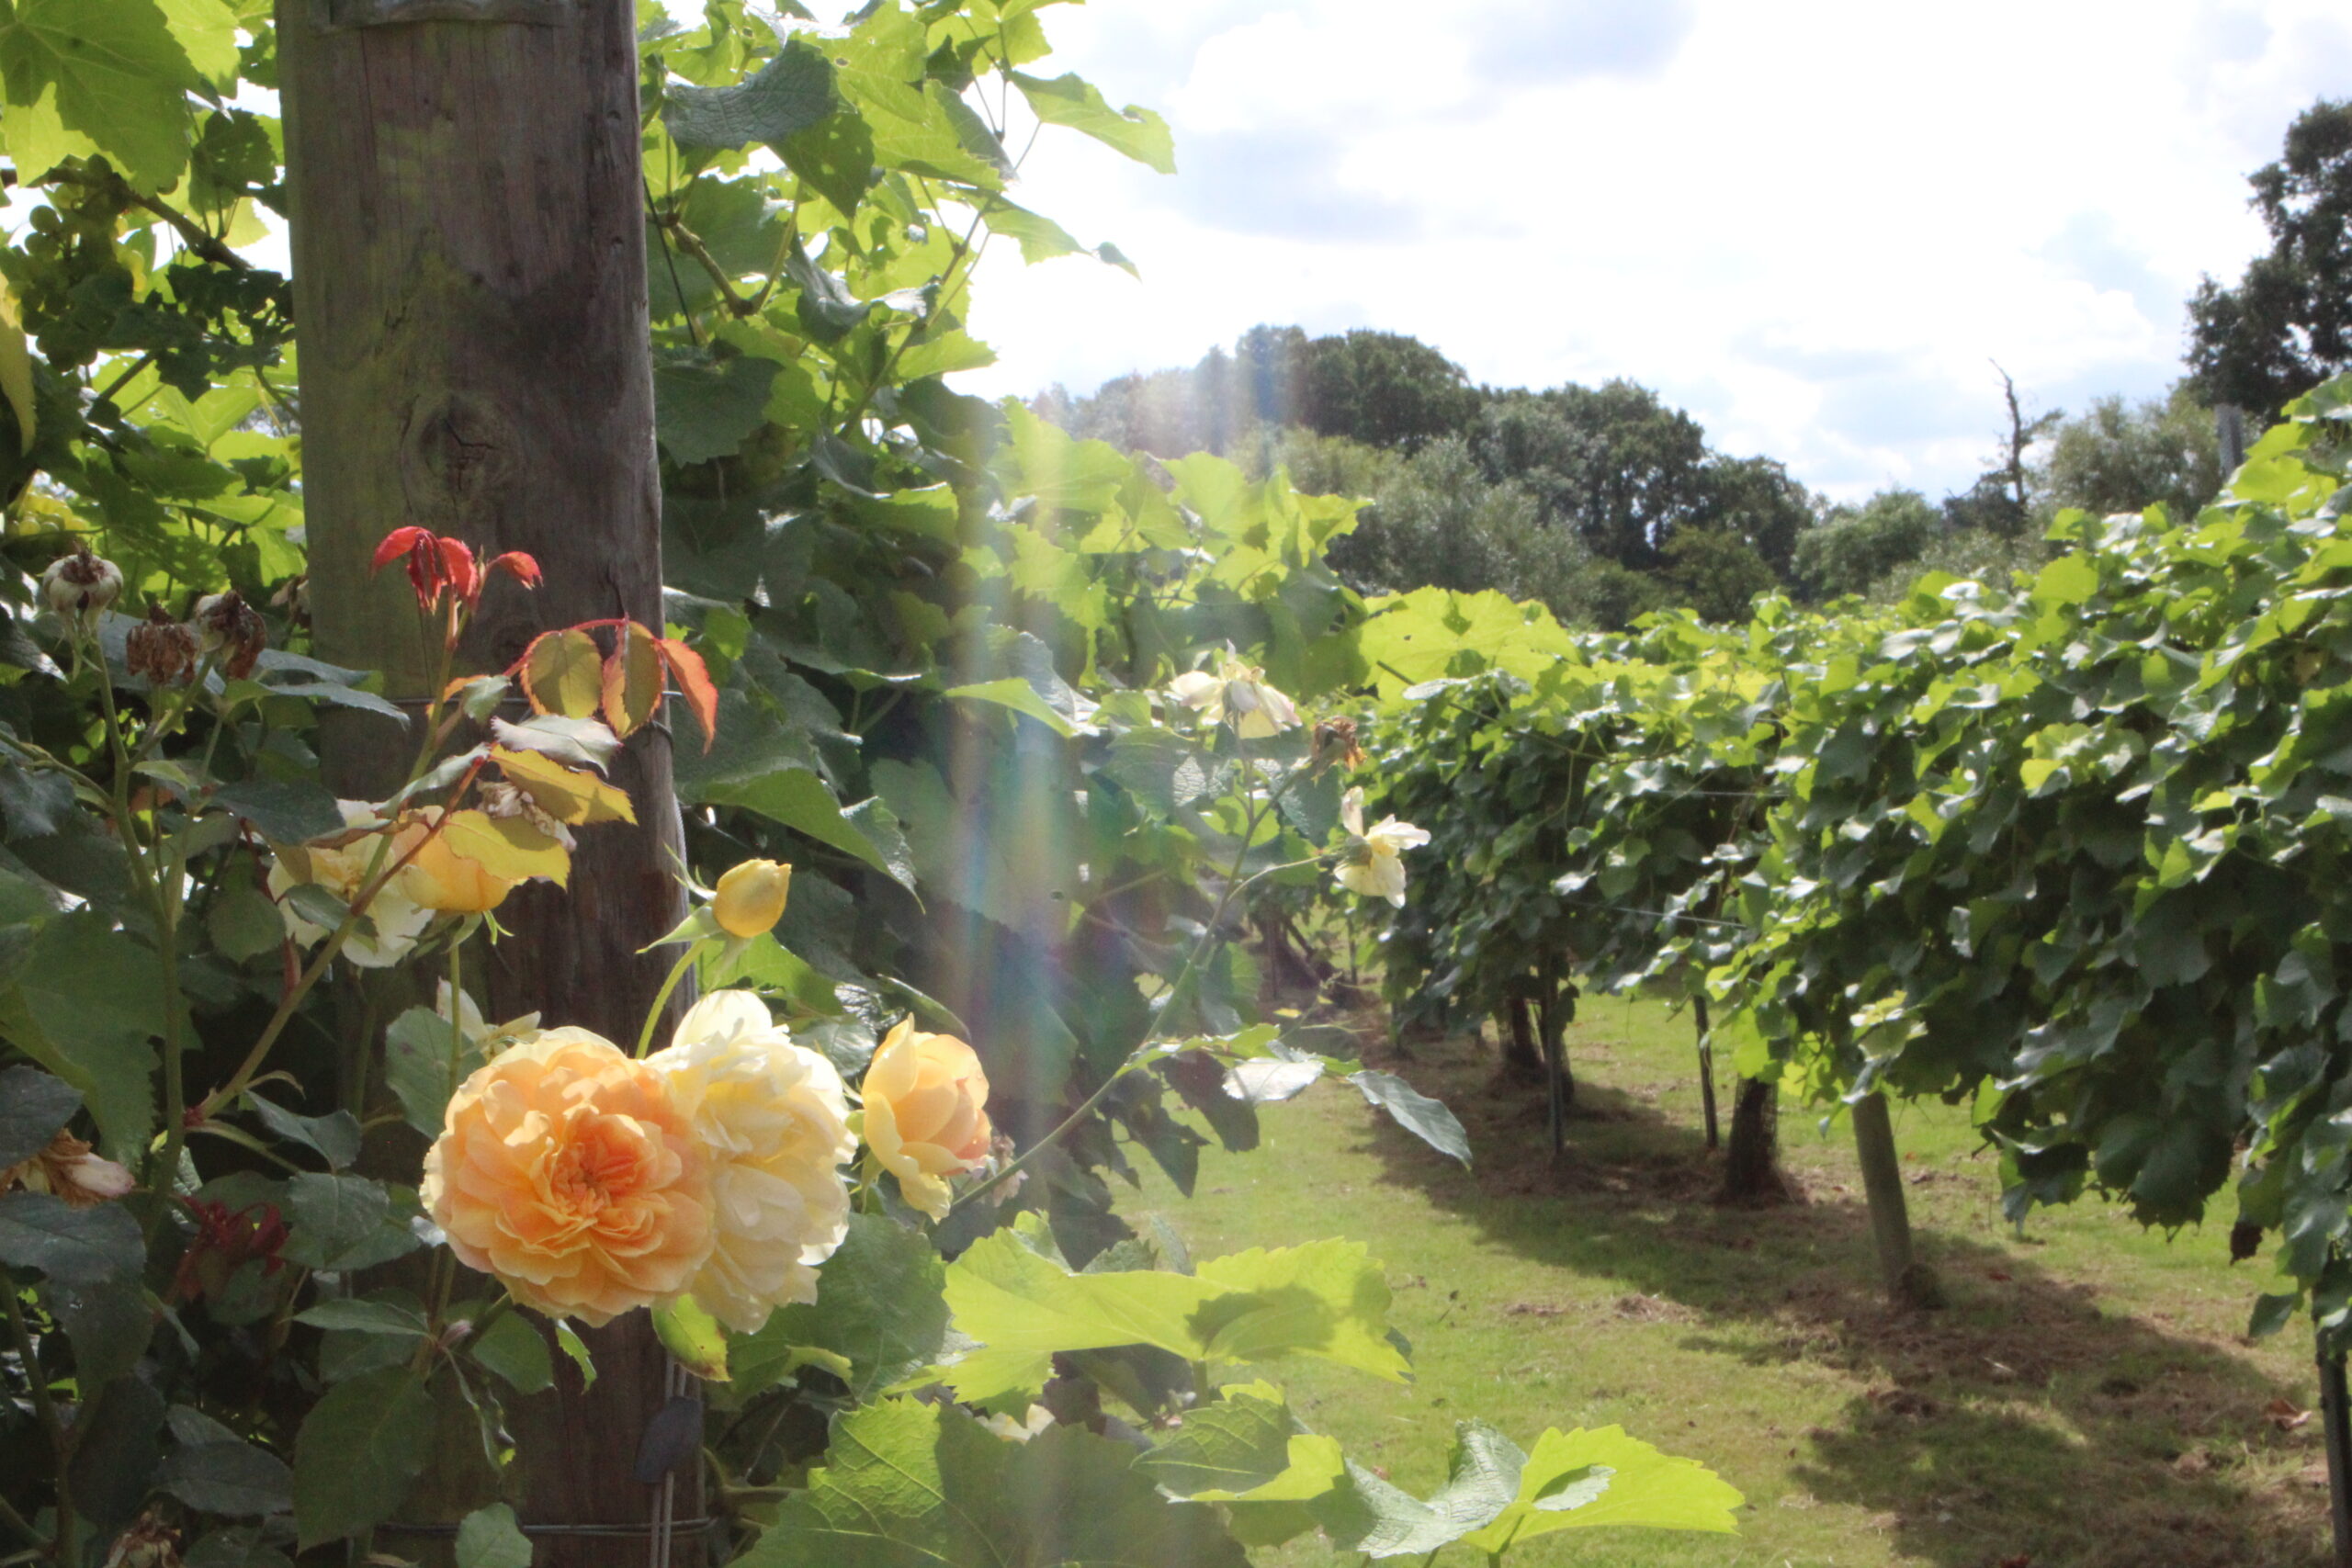 English roses in an English vineyard